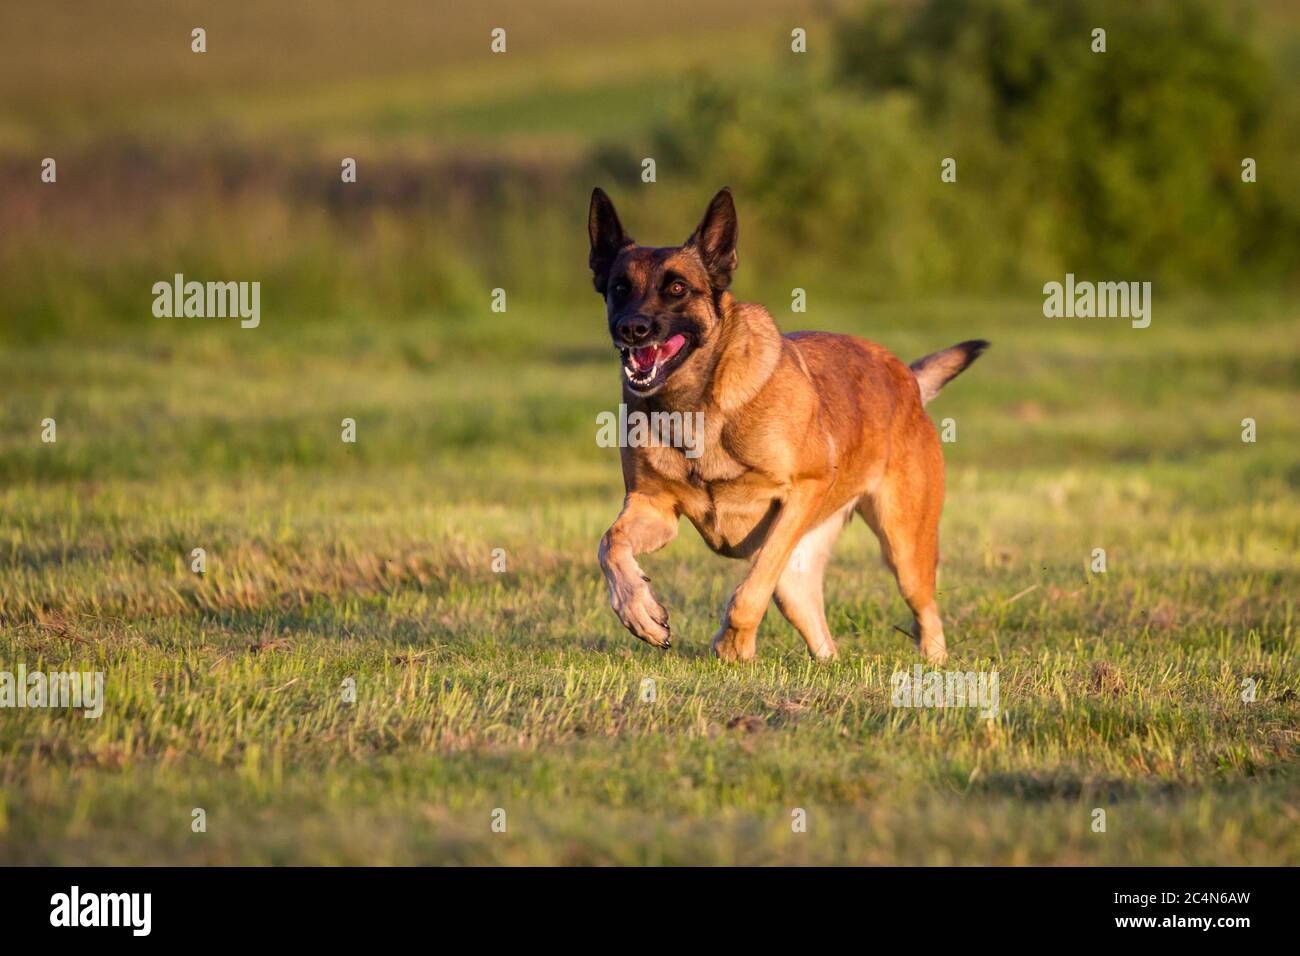 Belgian Shepherd Dog (Malinois) running Stock Photo